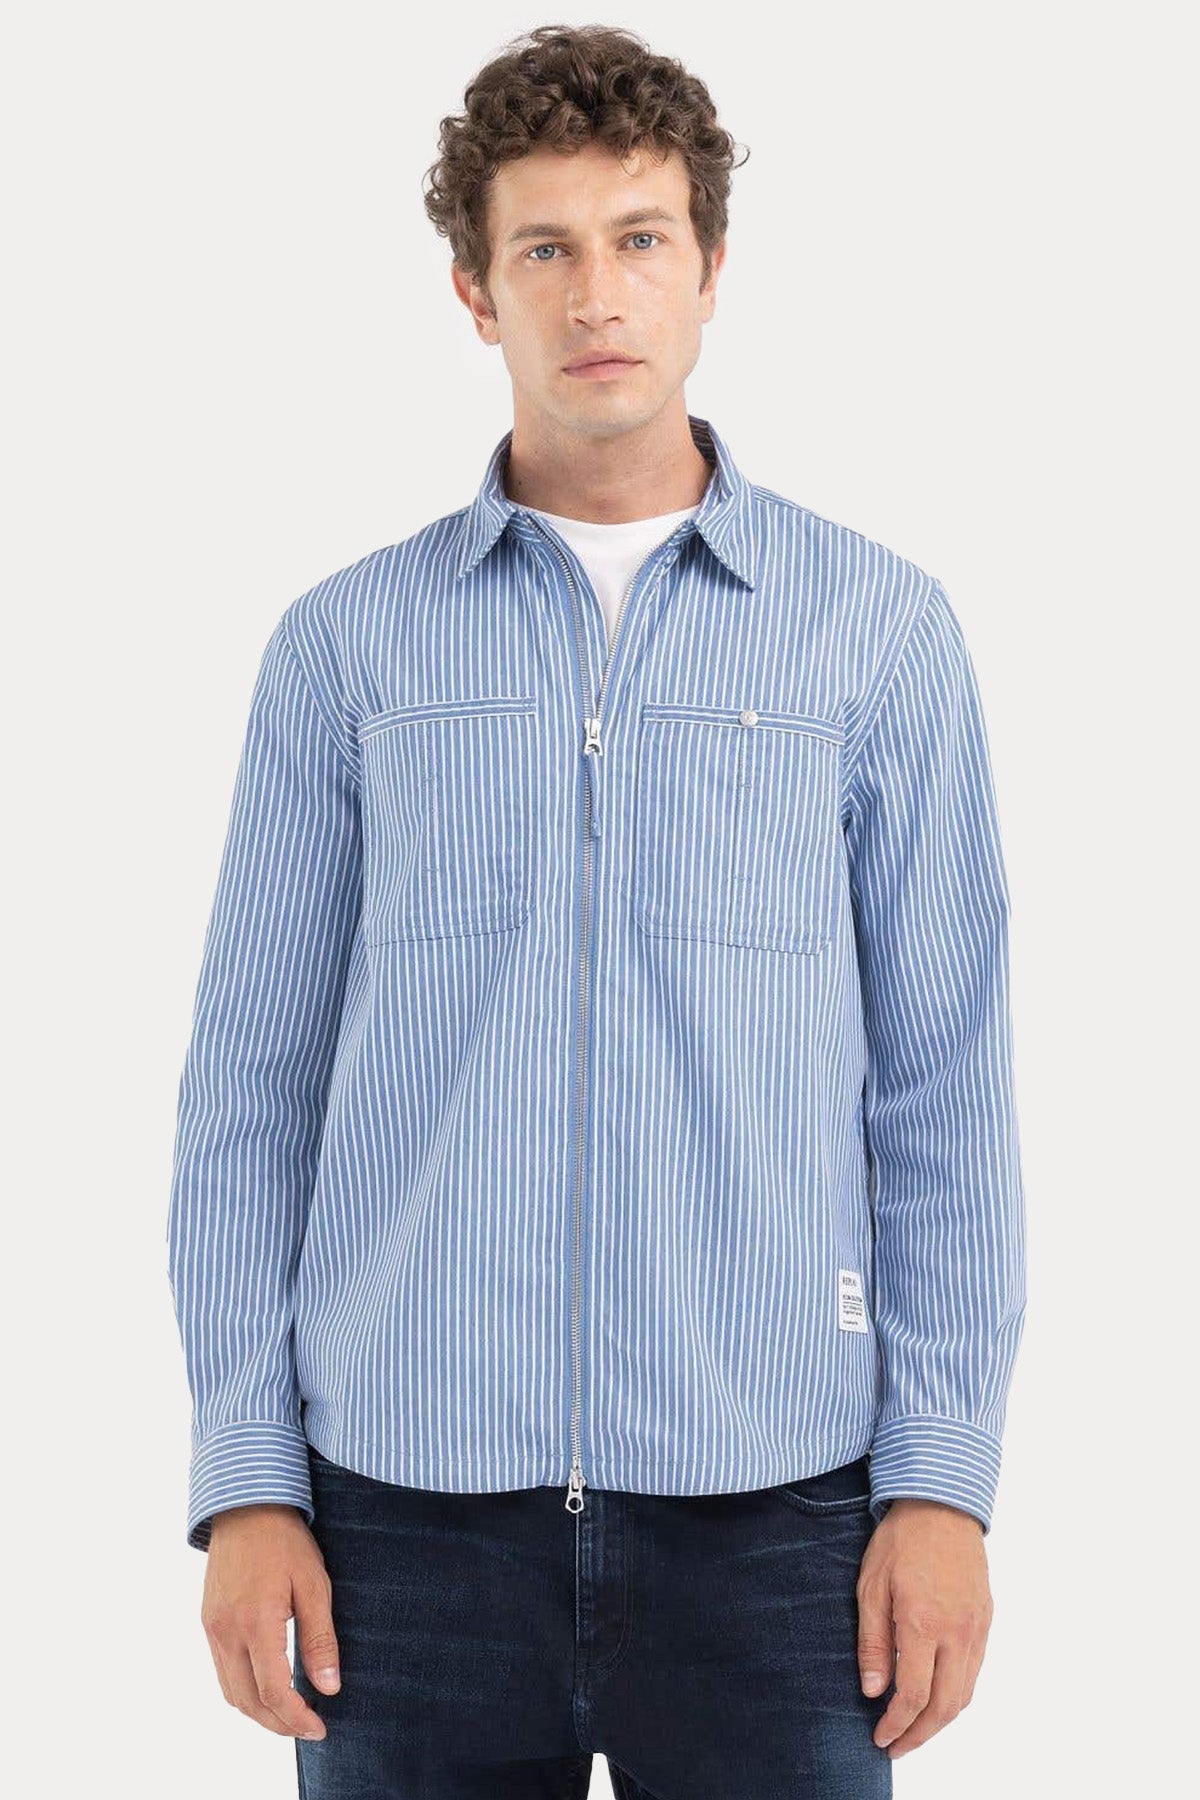 Replay Klasik Yaka Cep Detaylı Çizgili Gömlek Ceket